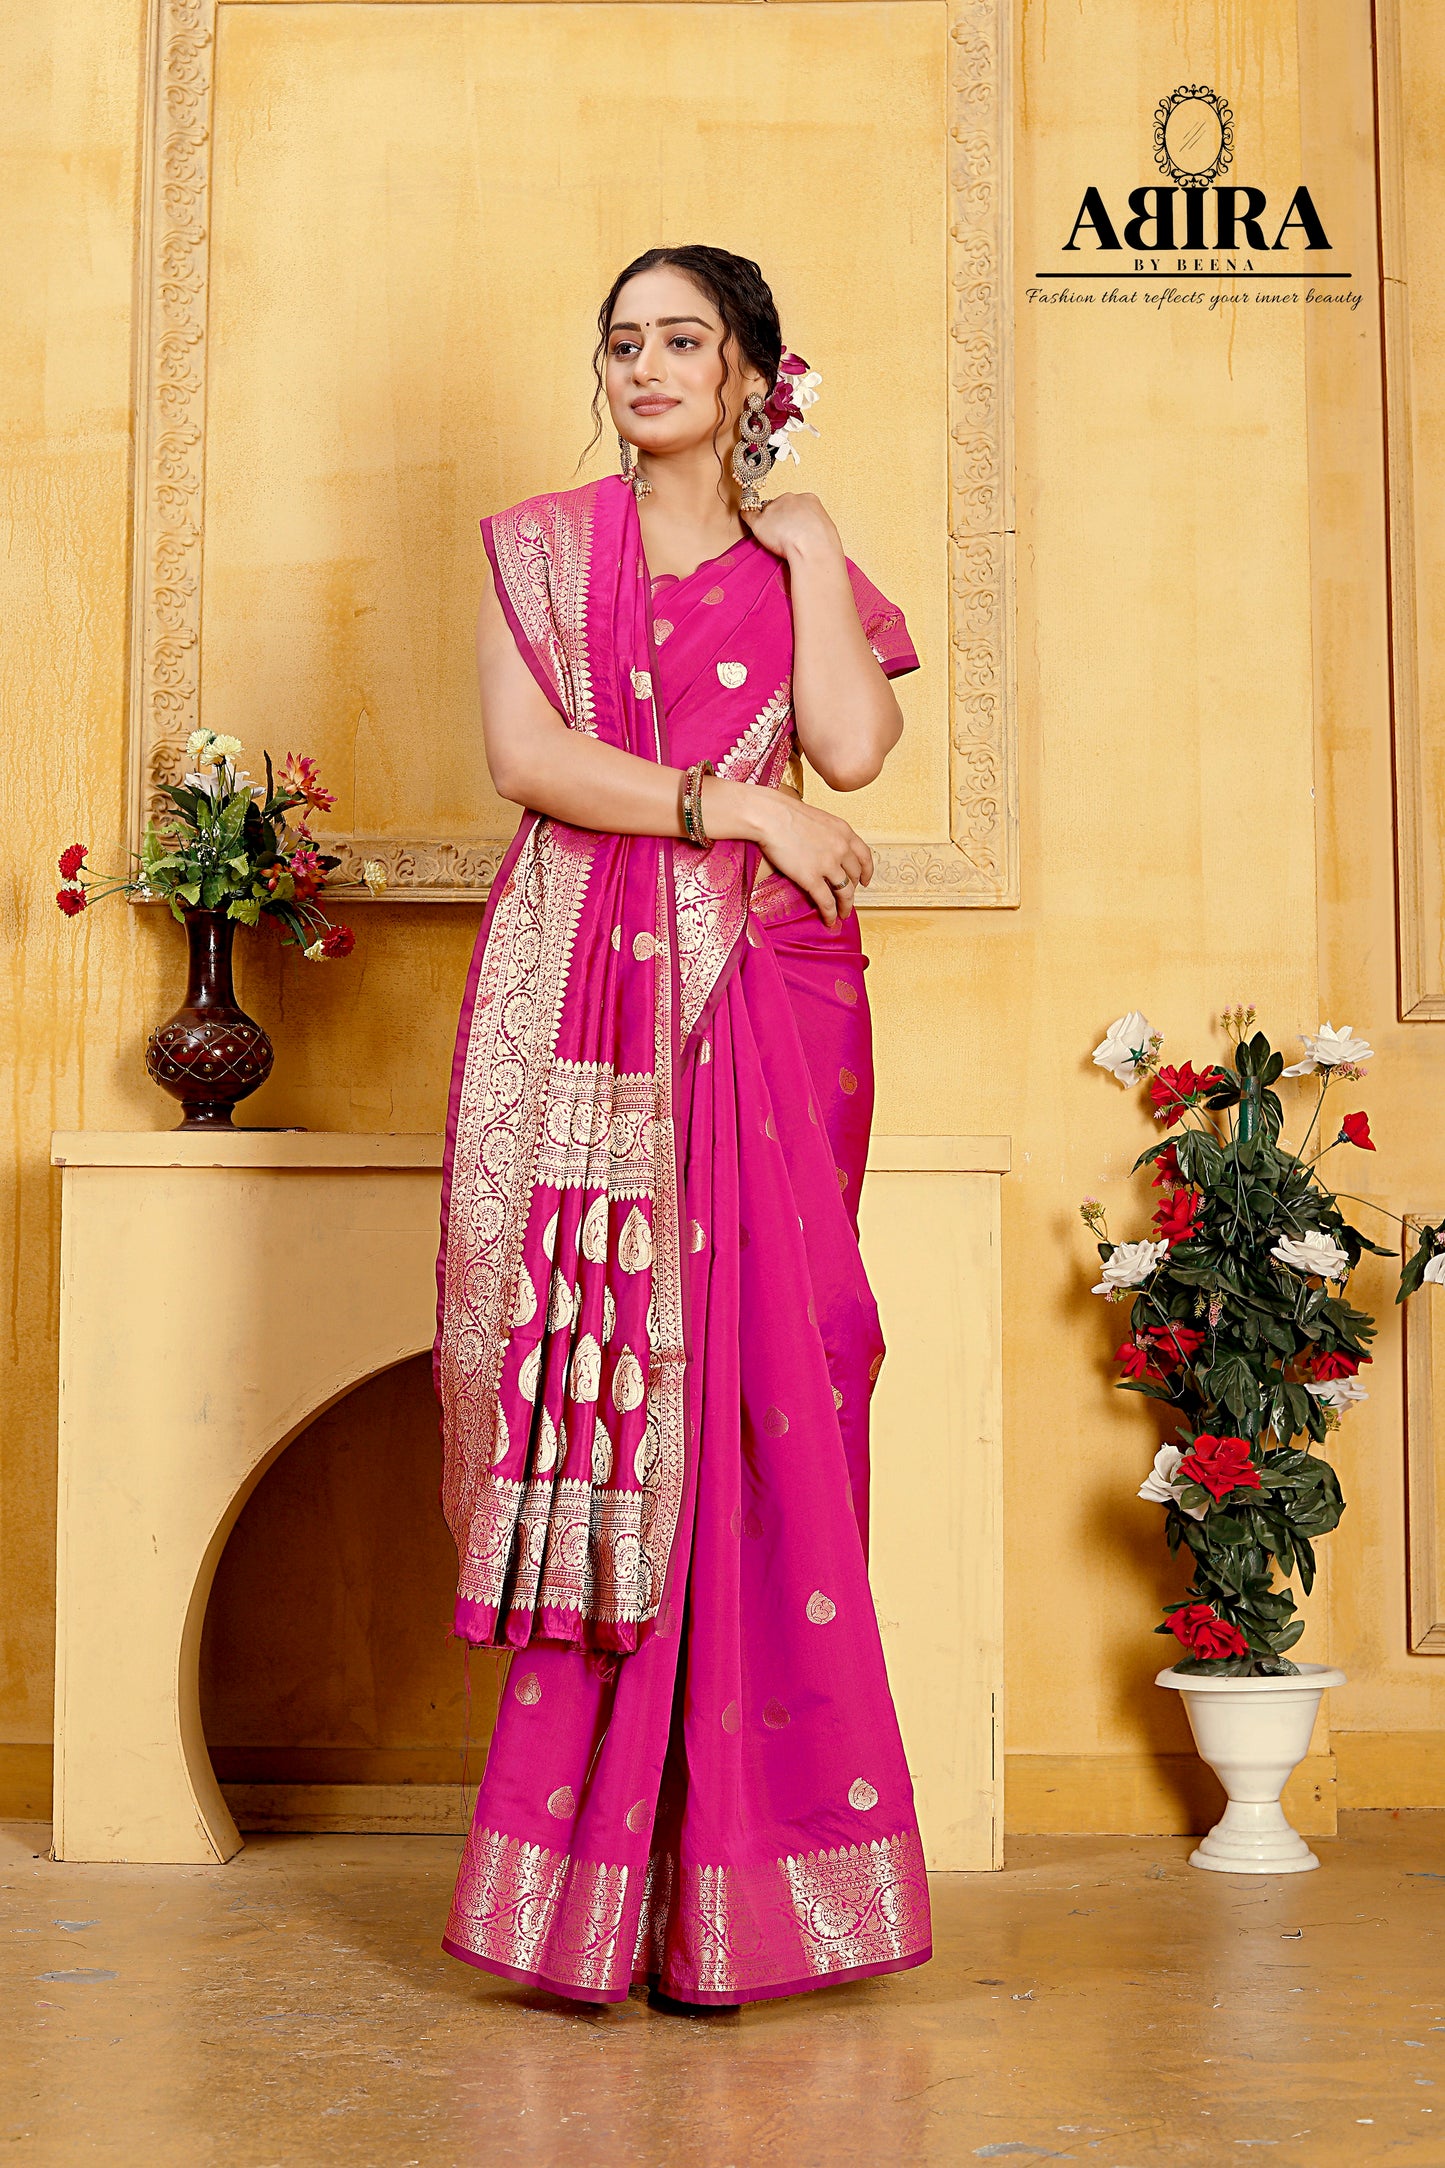 Fluorescent Pink Banaras Soft Katan silk - AbirabyBeena